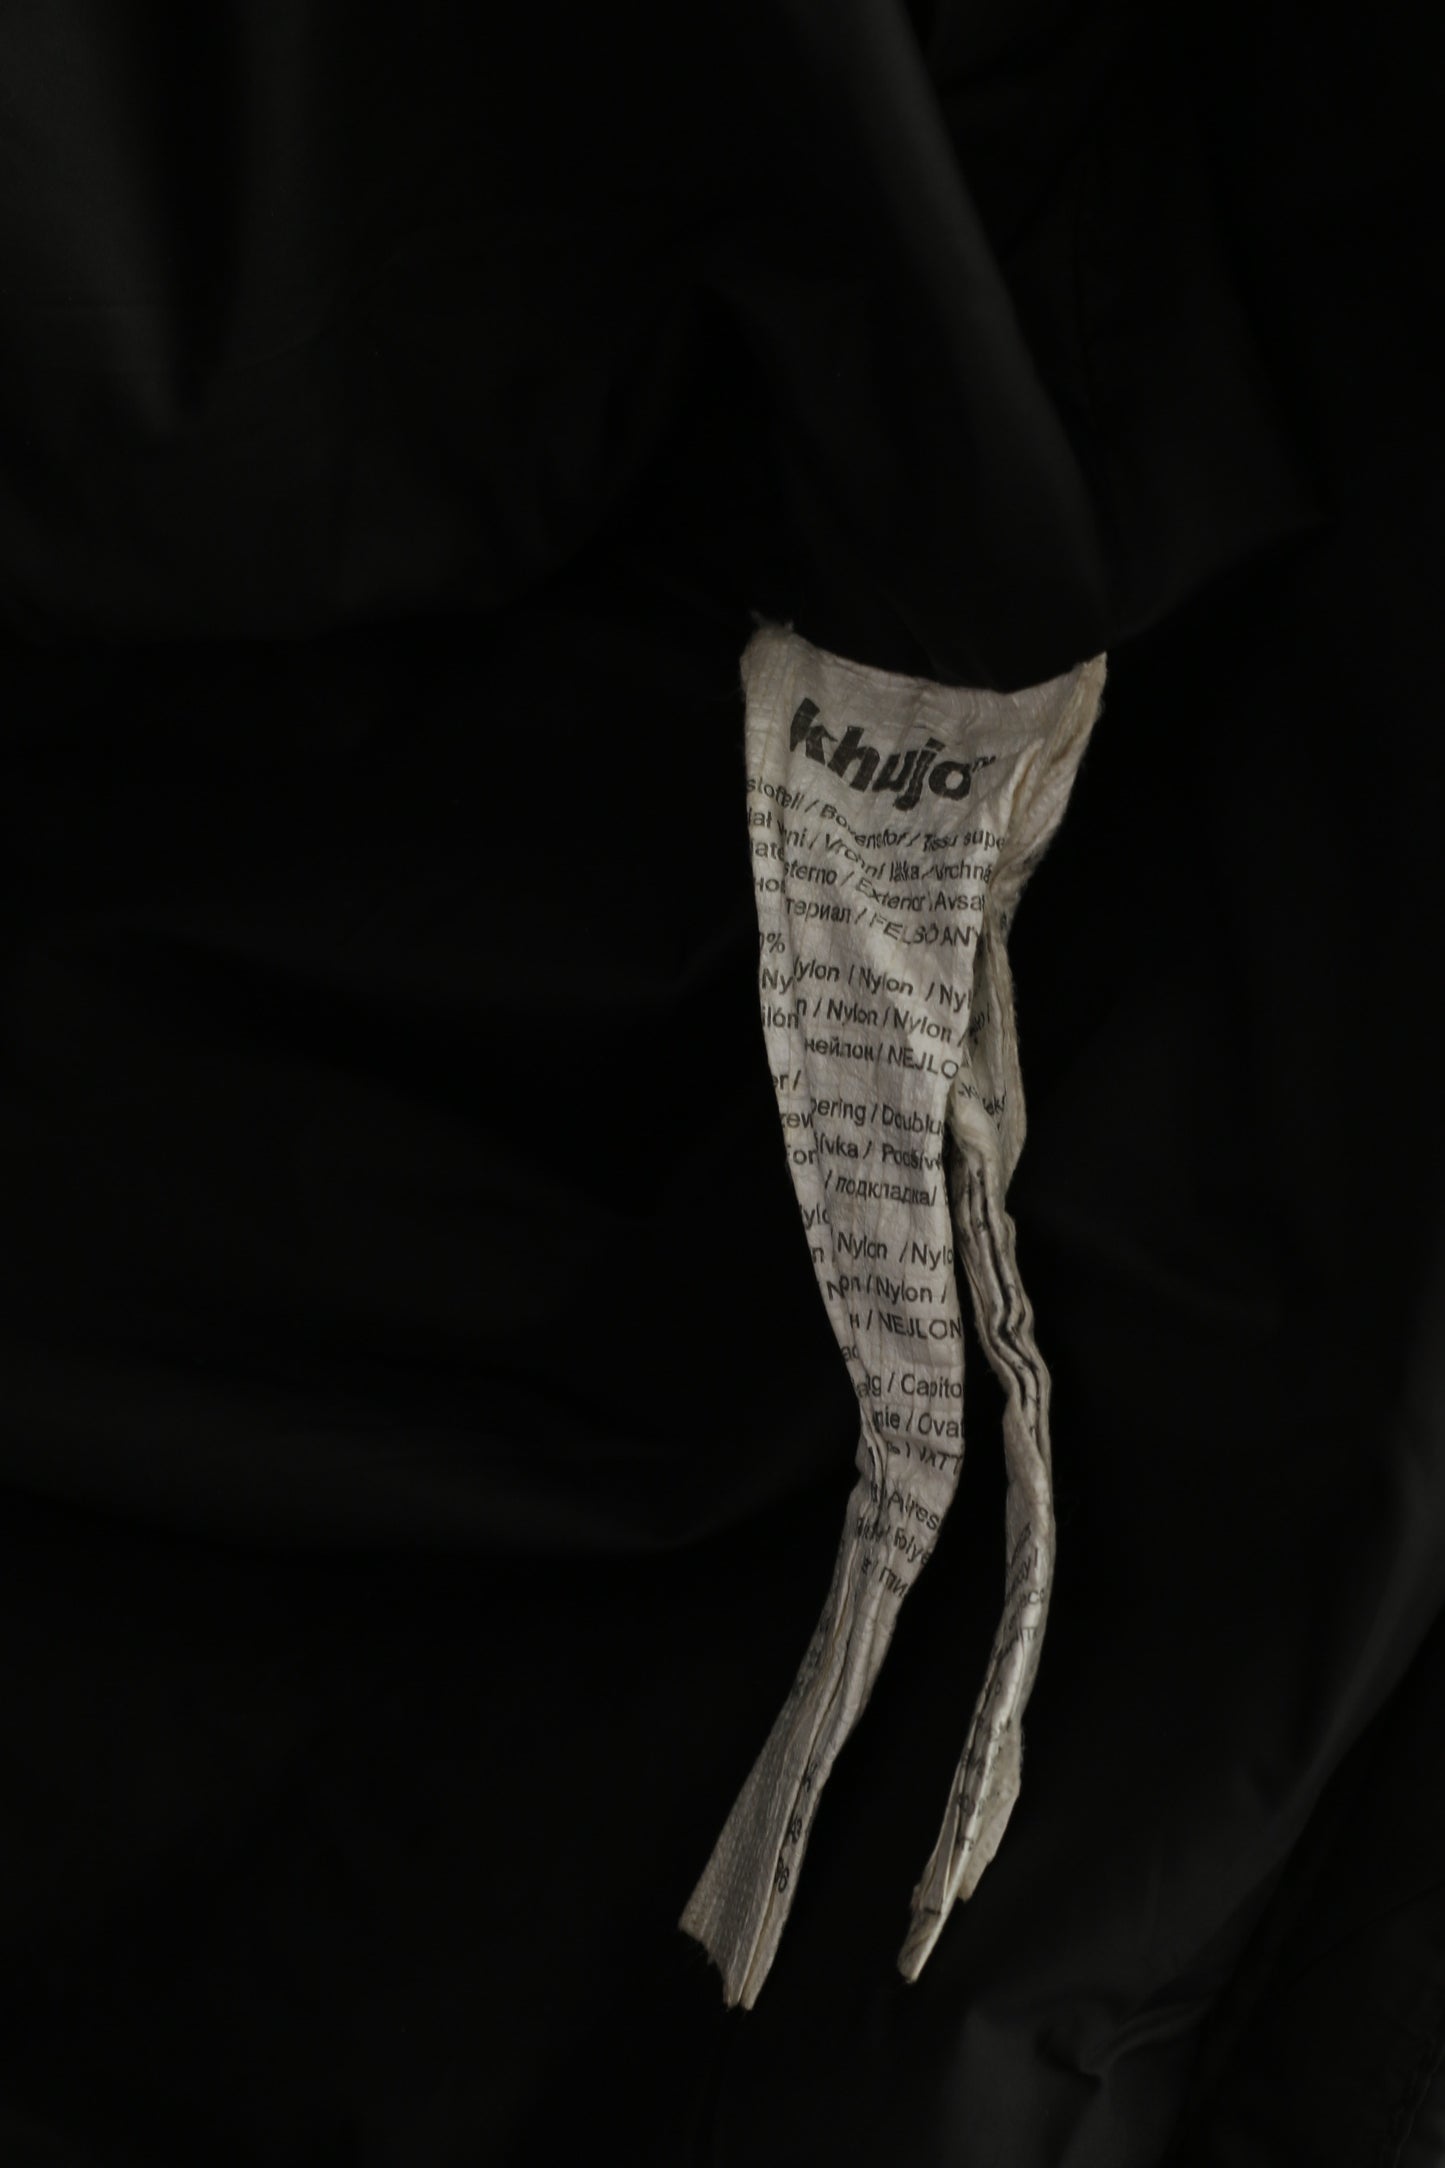 Giacca Khujo da donna L (M) Top con cerniera vintage in nylon imbottito nero stile Sarafina